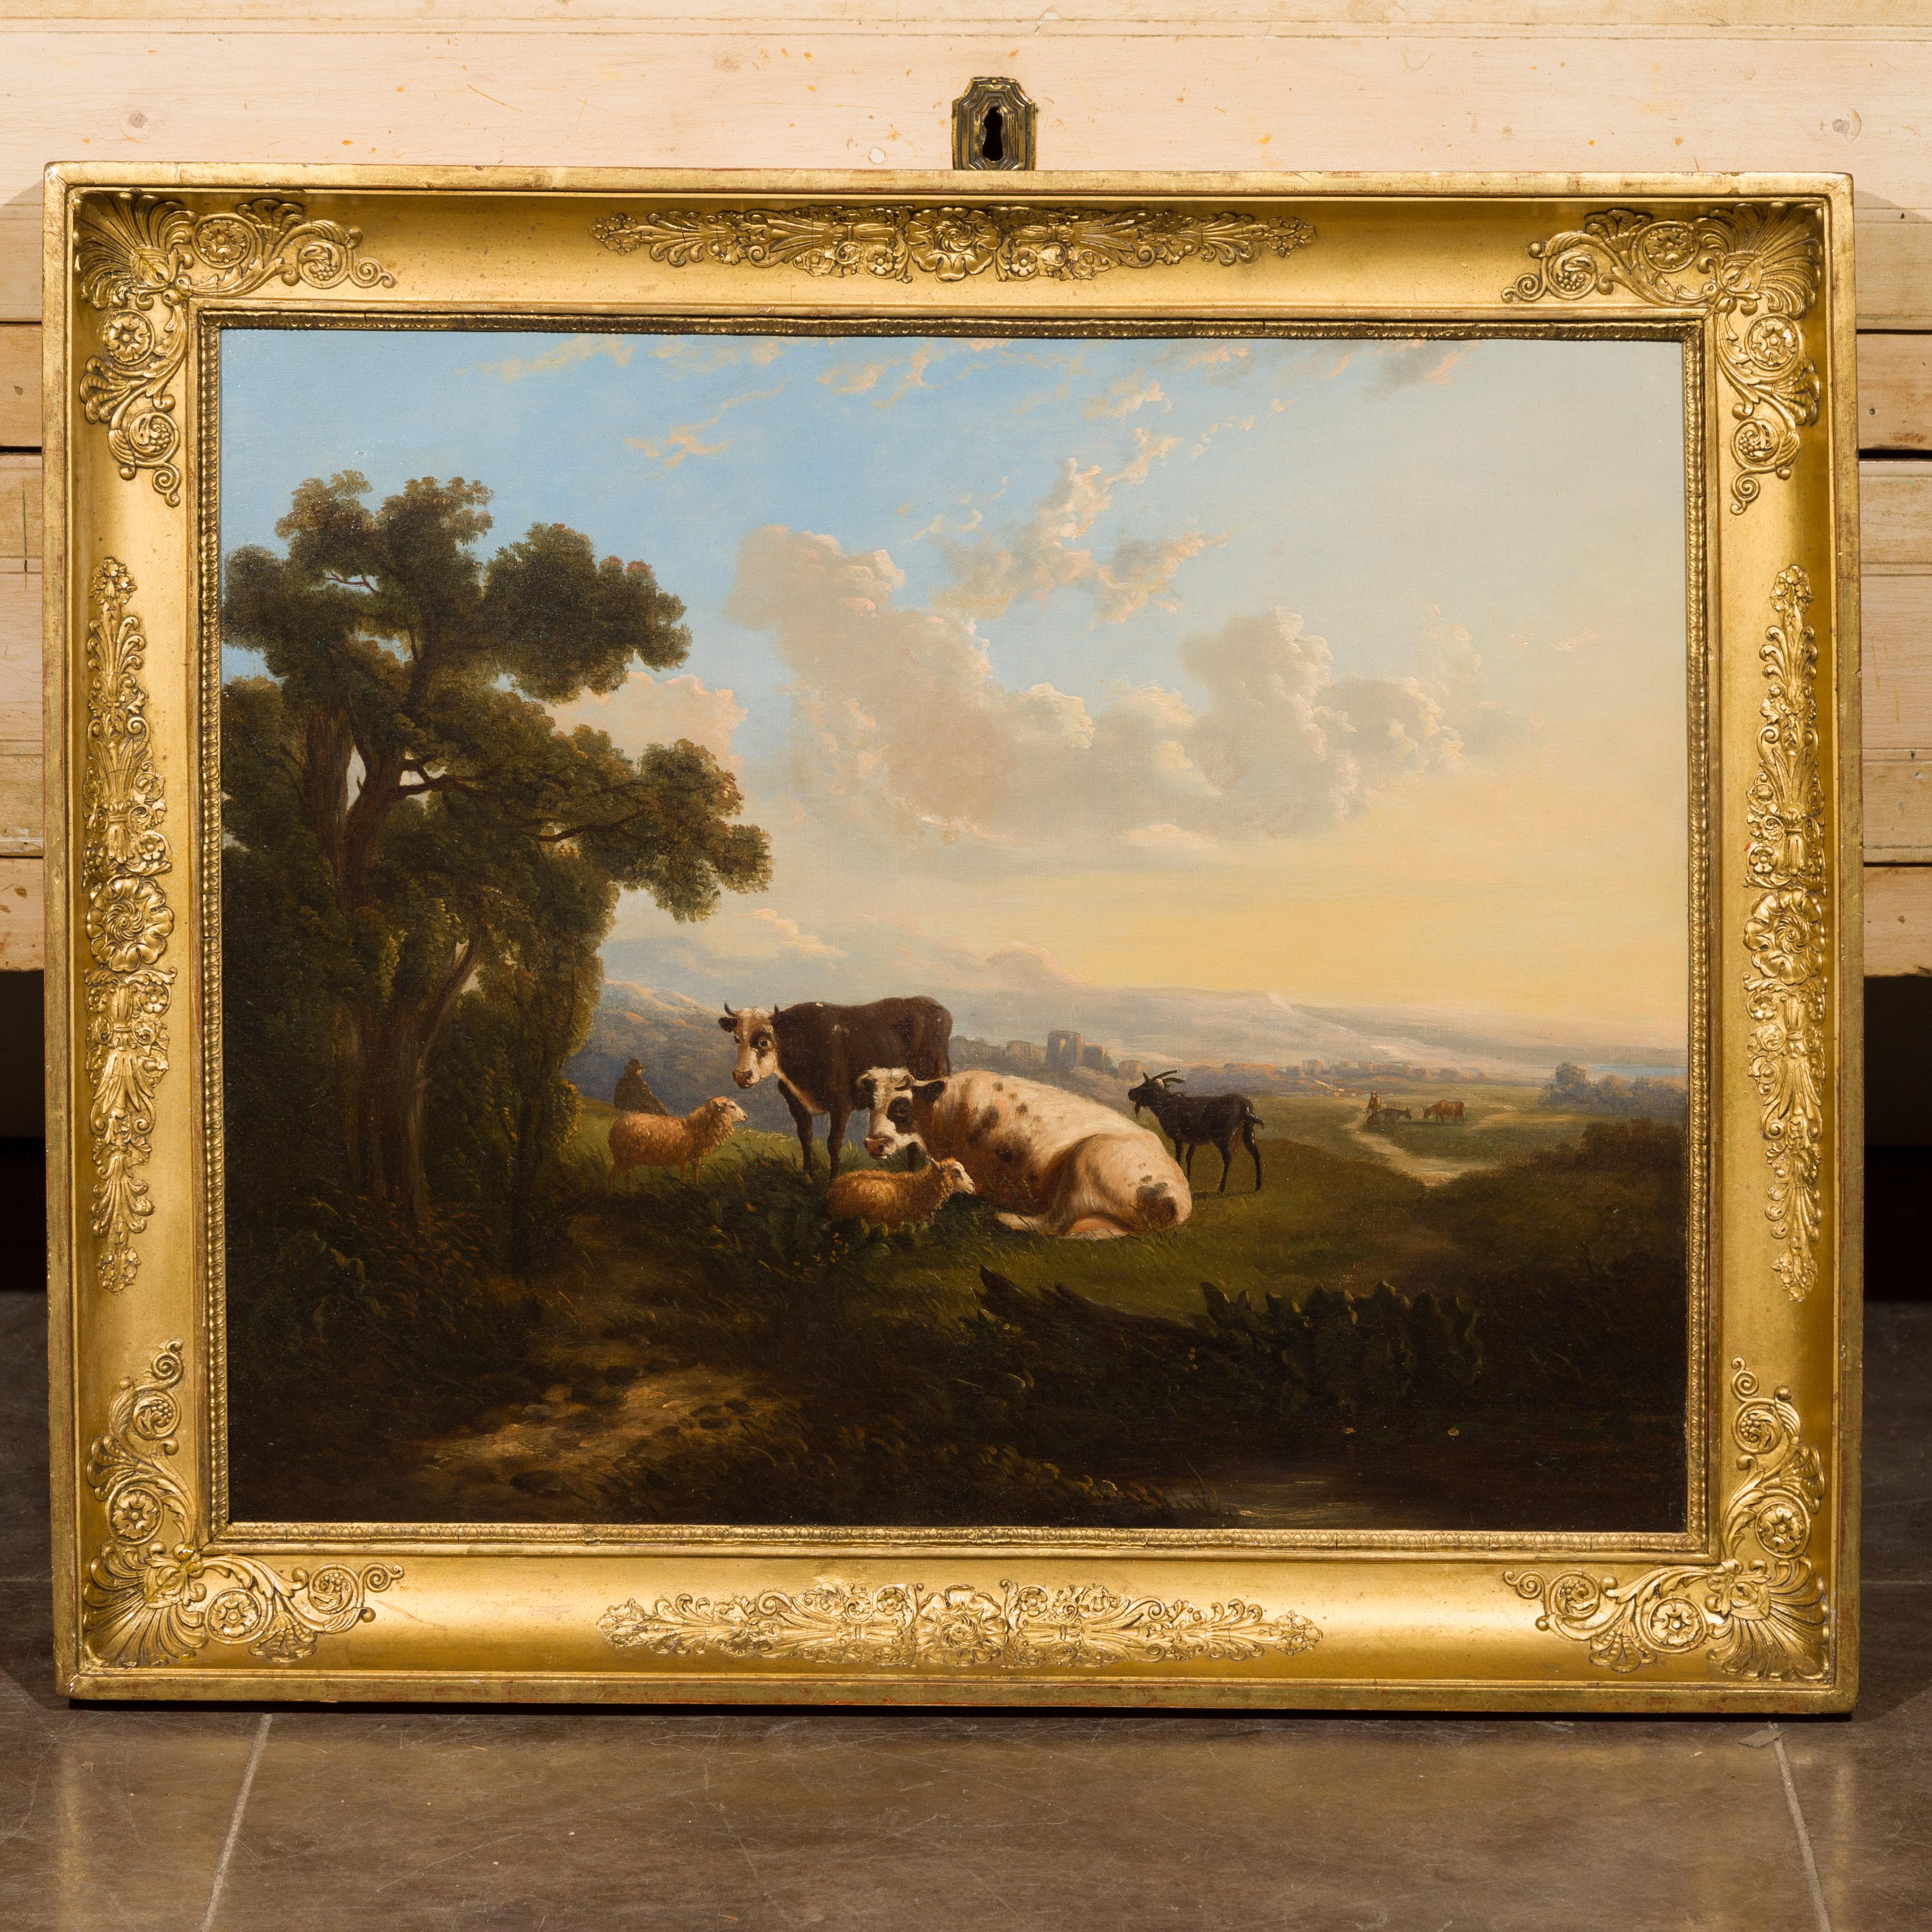 Une peinture italienne à l'huile sur toile du milieu du 19e siècle représentant des vaches, des moutons et des chèvres dans des pâturages, dans un cadre ancien en bois doré. Créée en Italie au cours du troisième quart du XIXe siècle, cette peinture